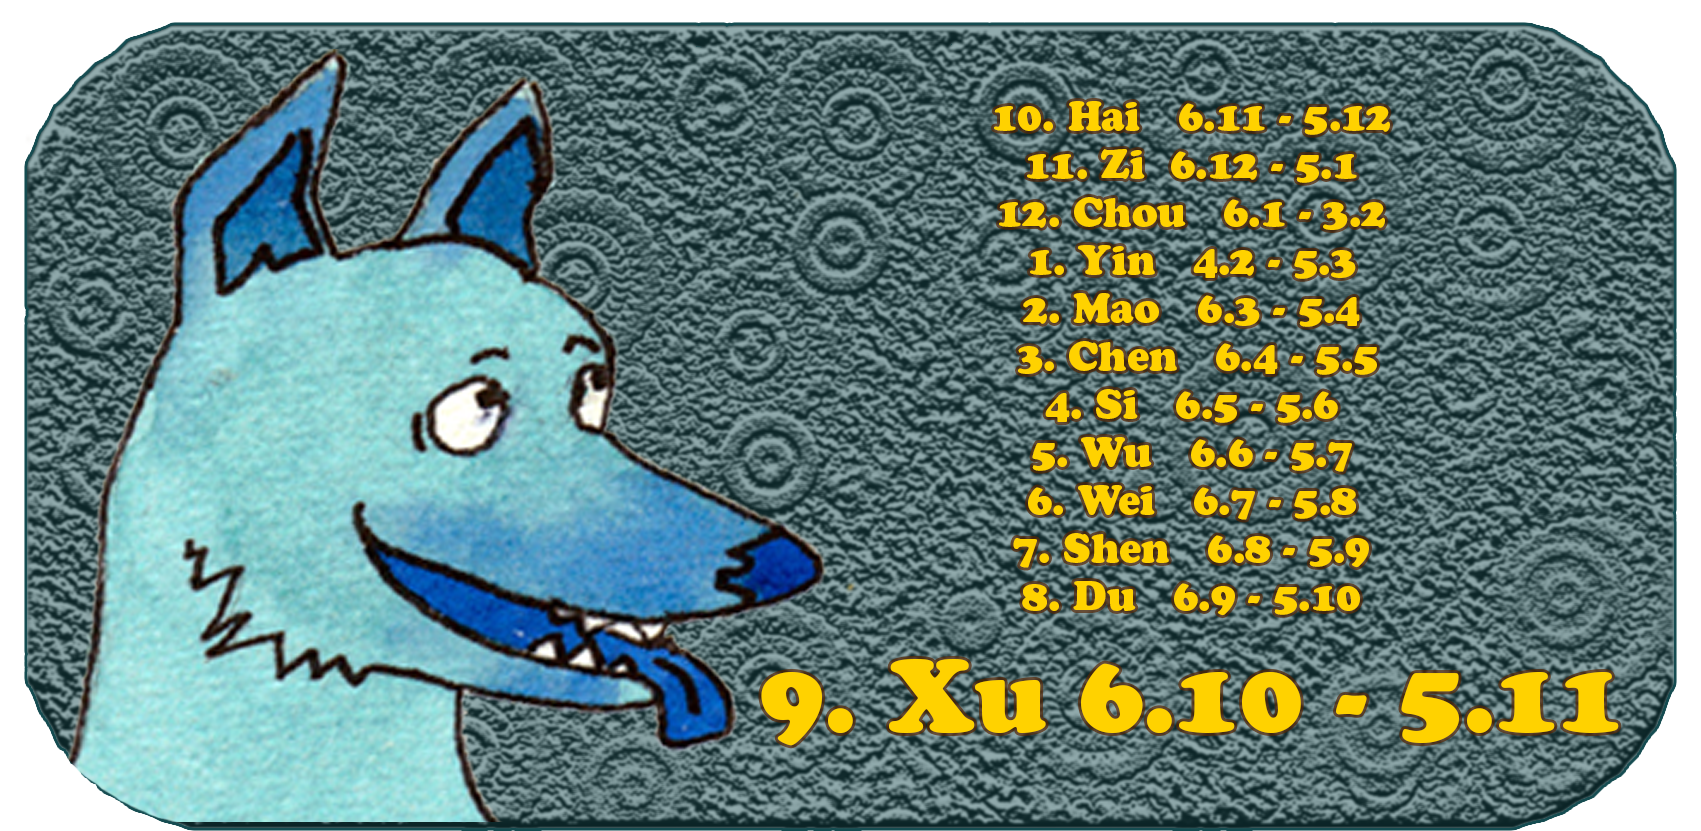 Zodíaco chino | Los doce animales chinos | perro, mes 9 de octubre, Xu